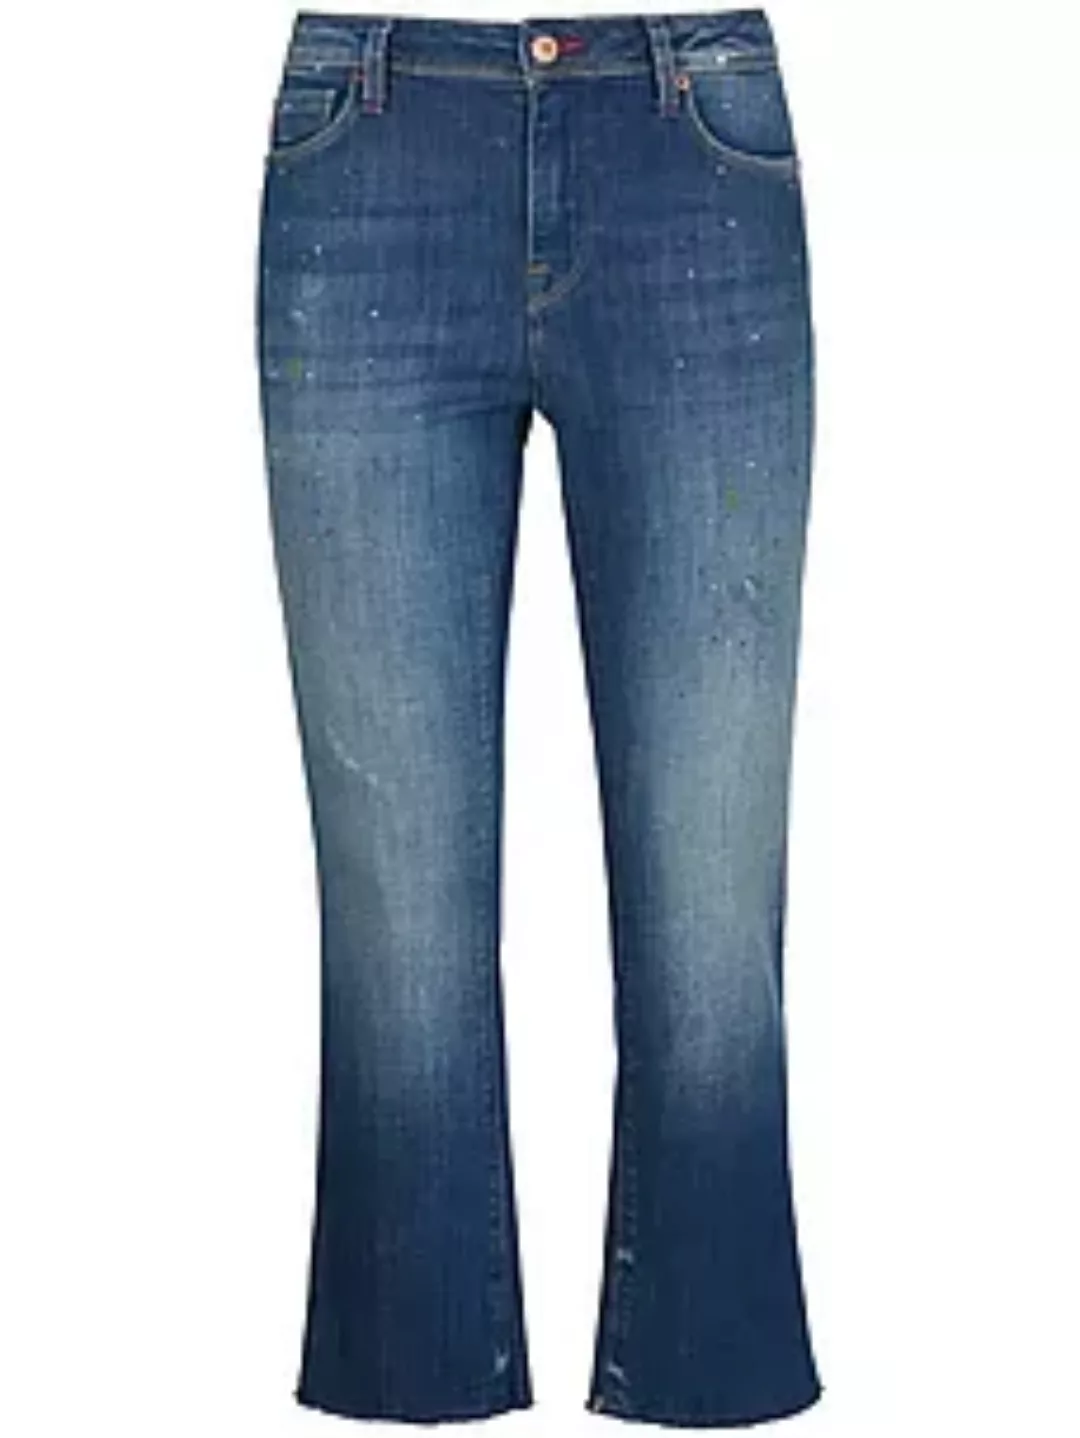 Knöchellange Jeans Modell Penny Raffaello Rossi denim günstig online kaufen